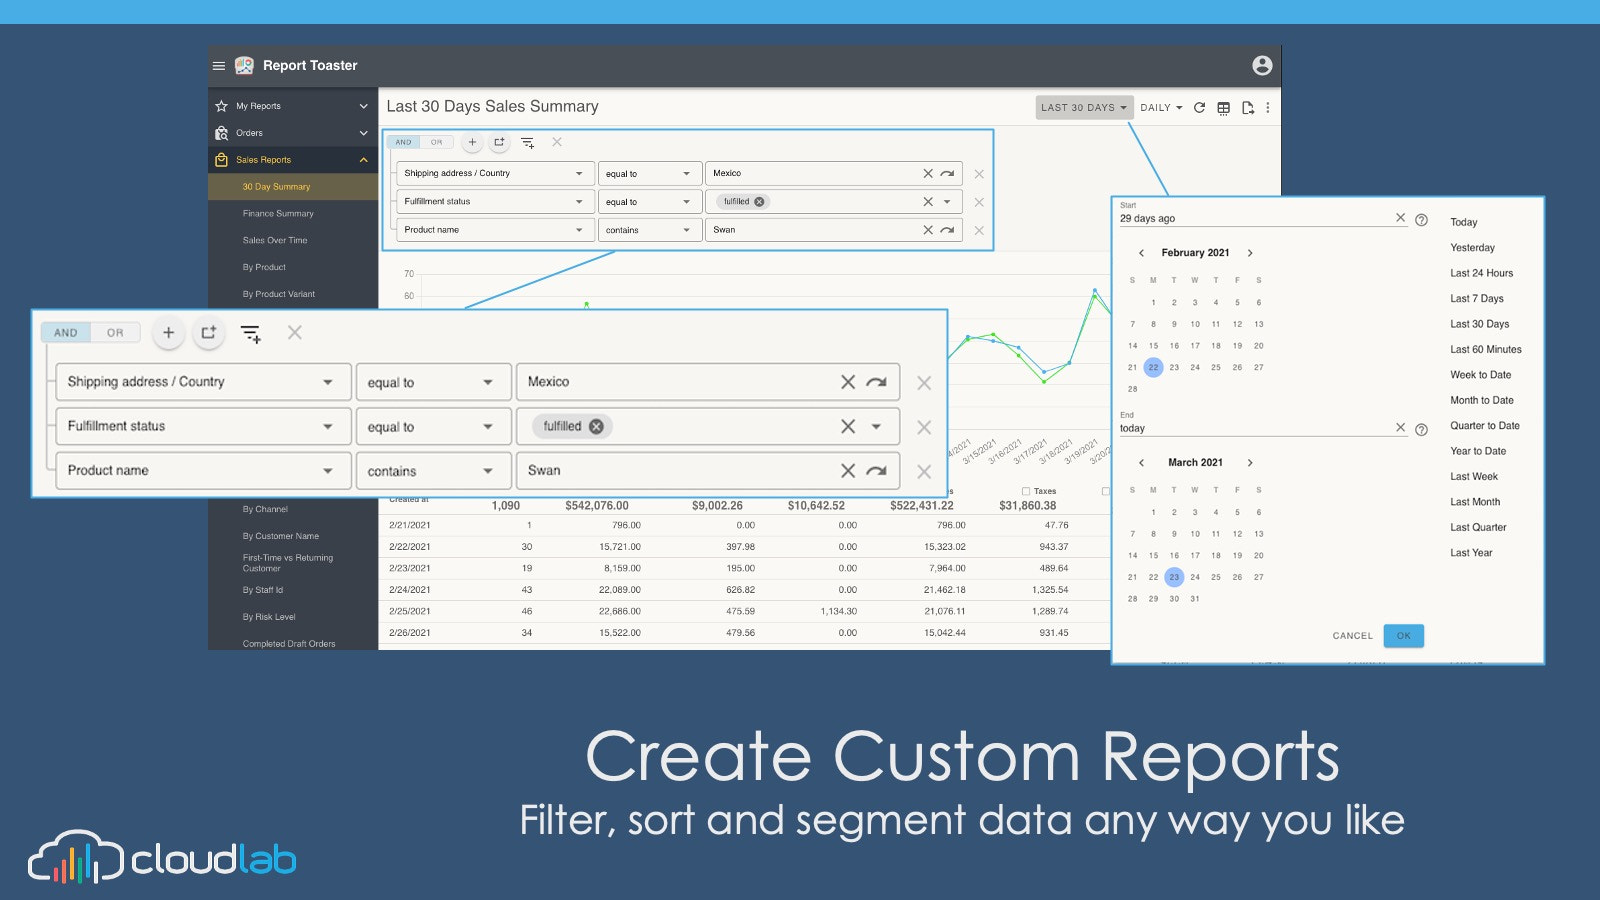 Opret tilpassede rapporter ved at filtrere, sortere og segmentere data